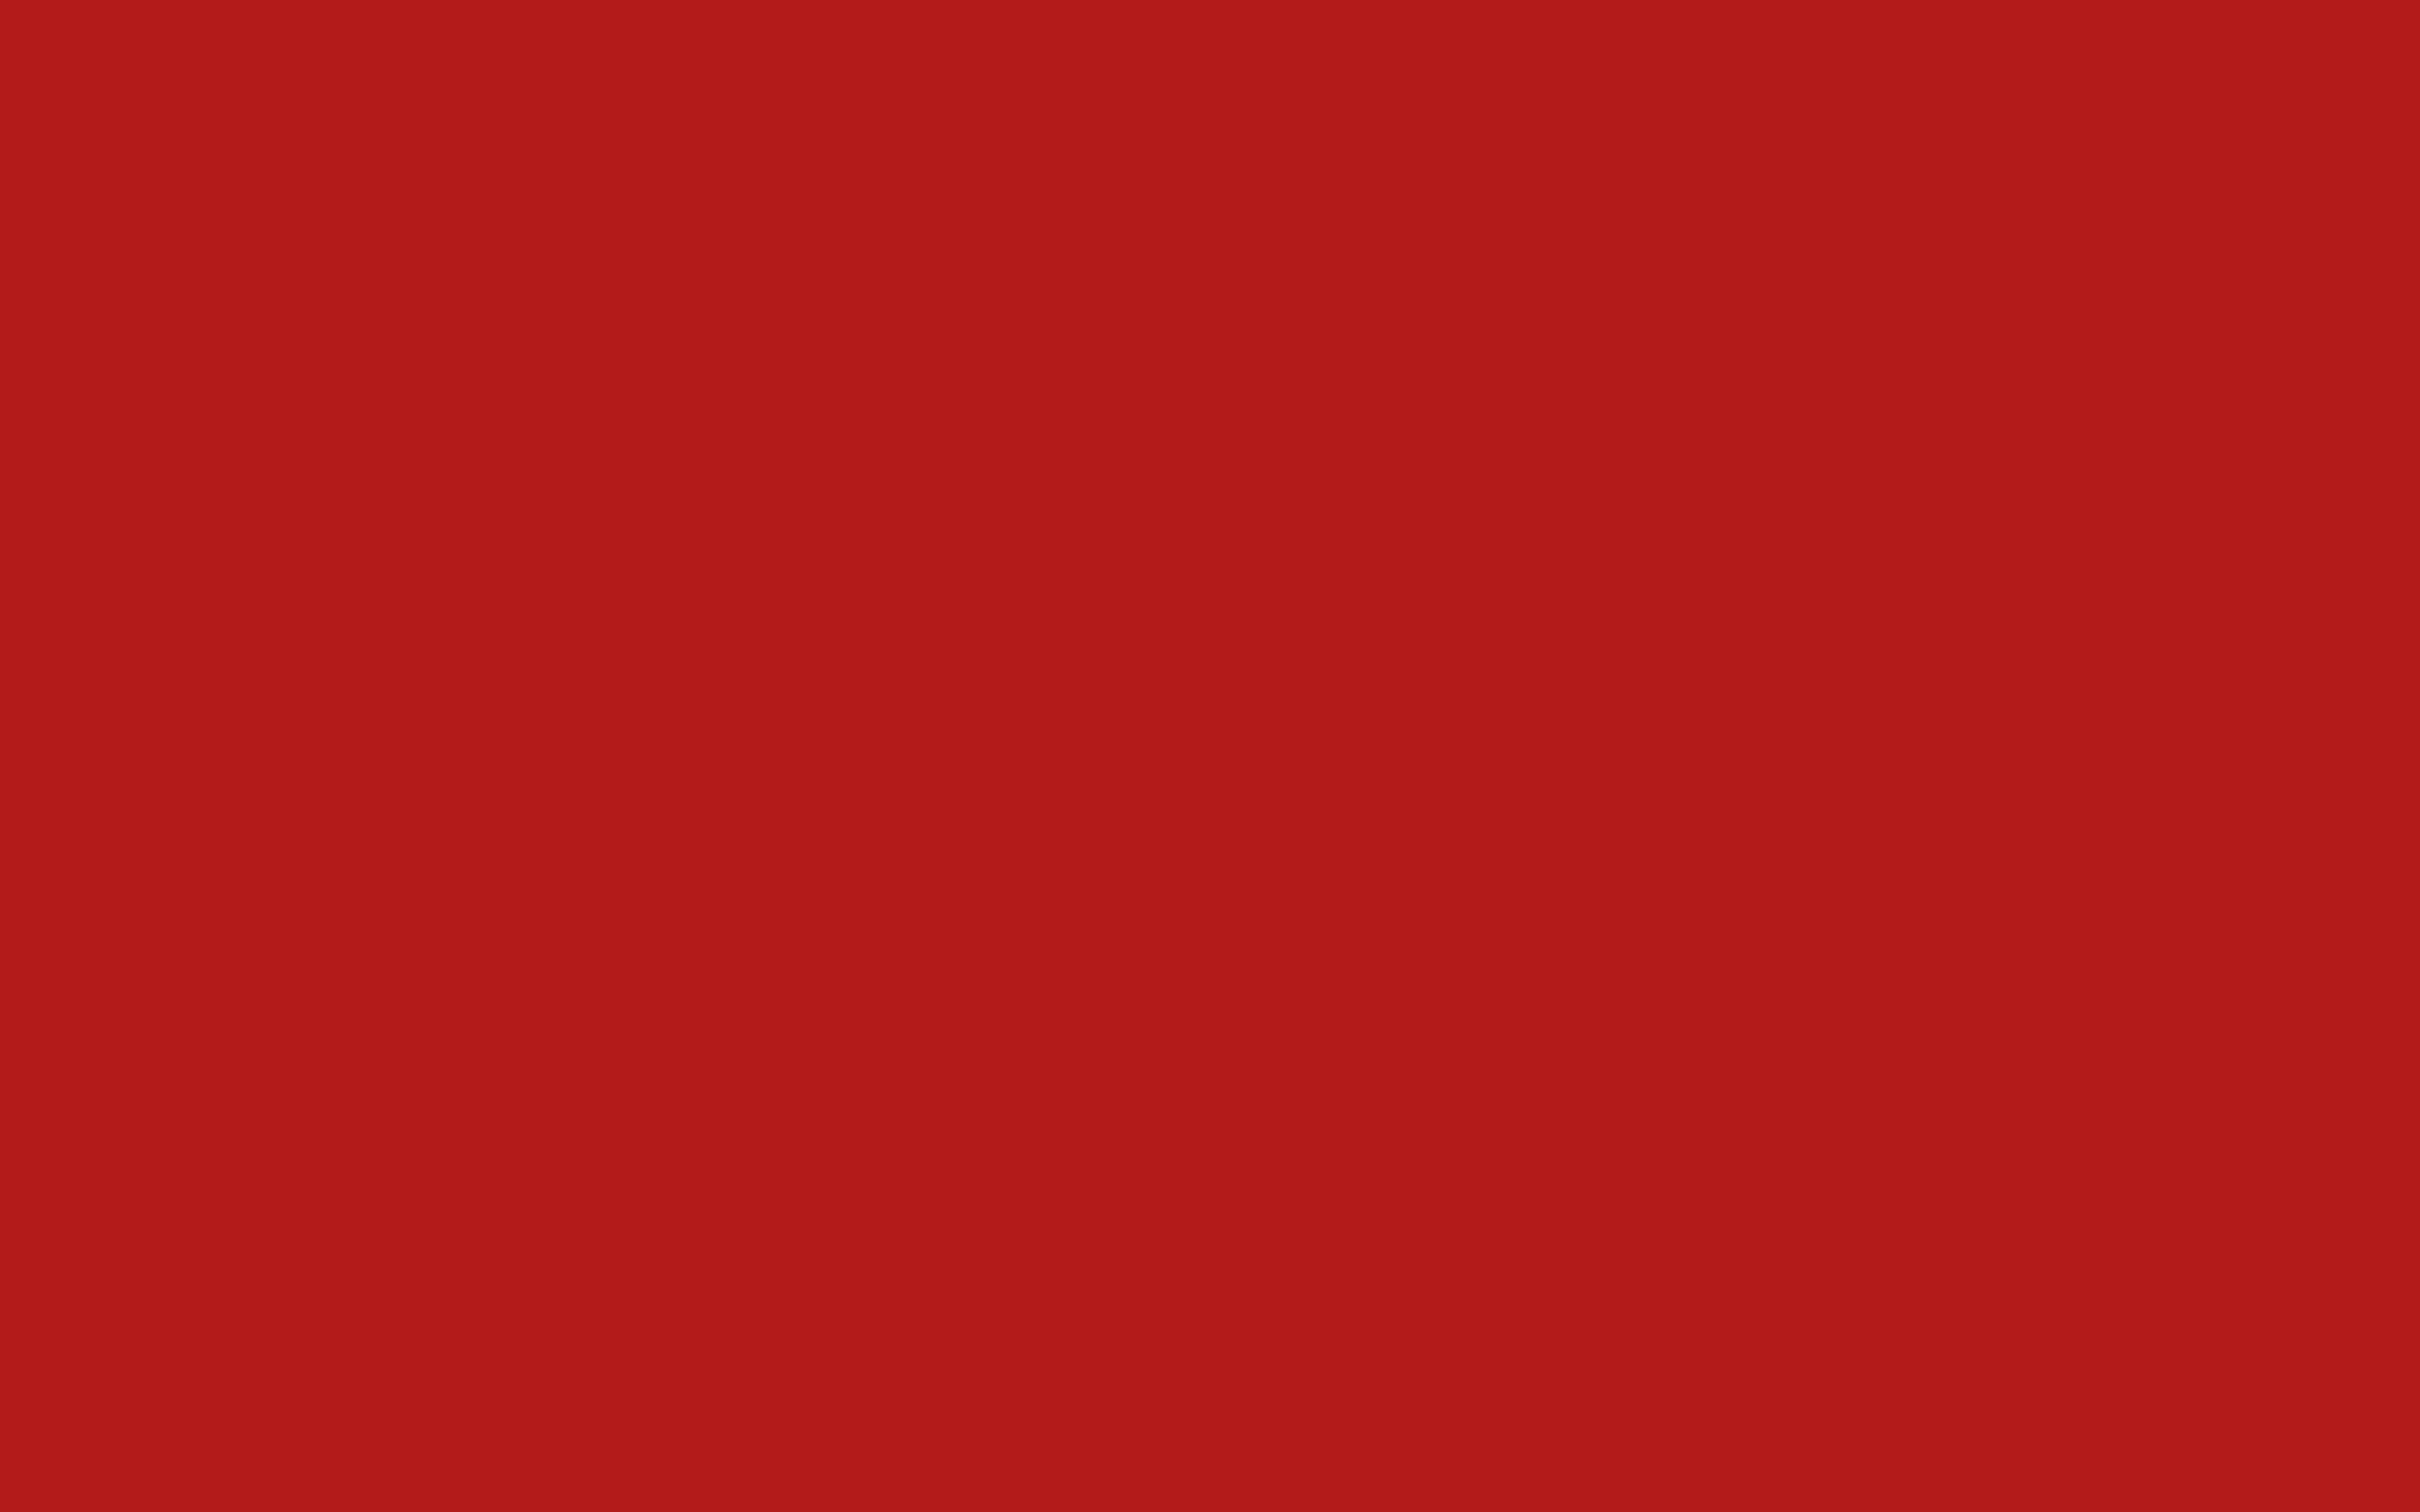 Hình nền desktop đỏ 2024 sẽ là điểm nhấn thú vị cho không gian làm việc của bạn. Những hình ảnh chất lượng cao được thiết kế với nhiều phong cách đa dạng sẽ giúp bạn tạo ra một không gian làm việc độc đáo và mới mẻ. Hãy truy cập ngay để tìm được những hình nền desktop đỏ 2024 ấn tượng và độc đáo.